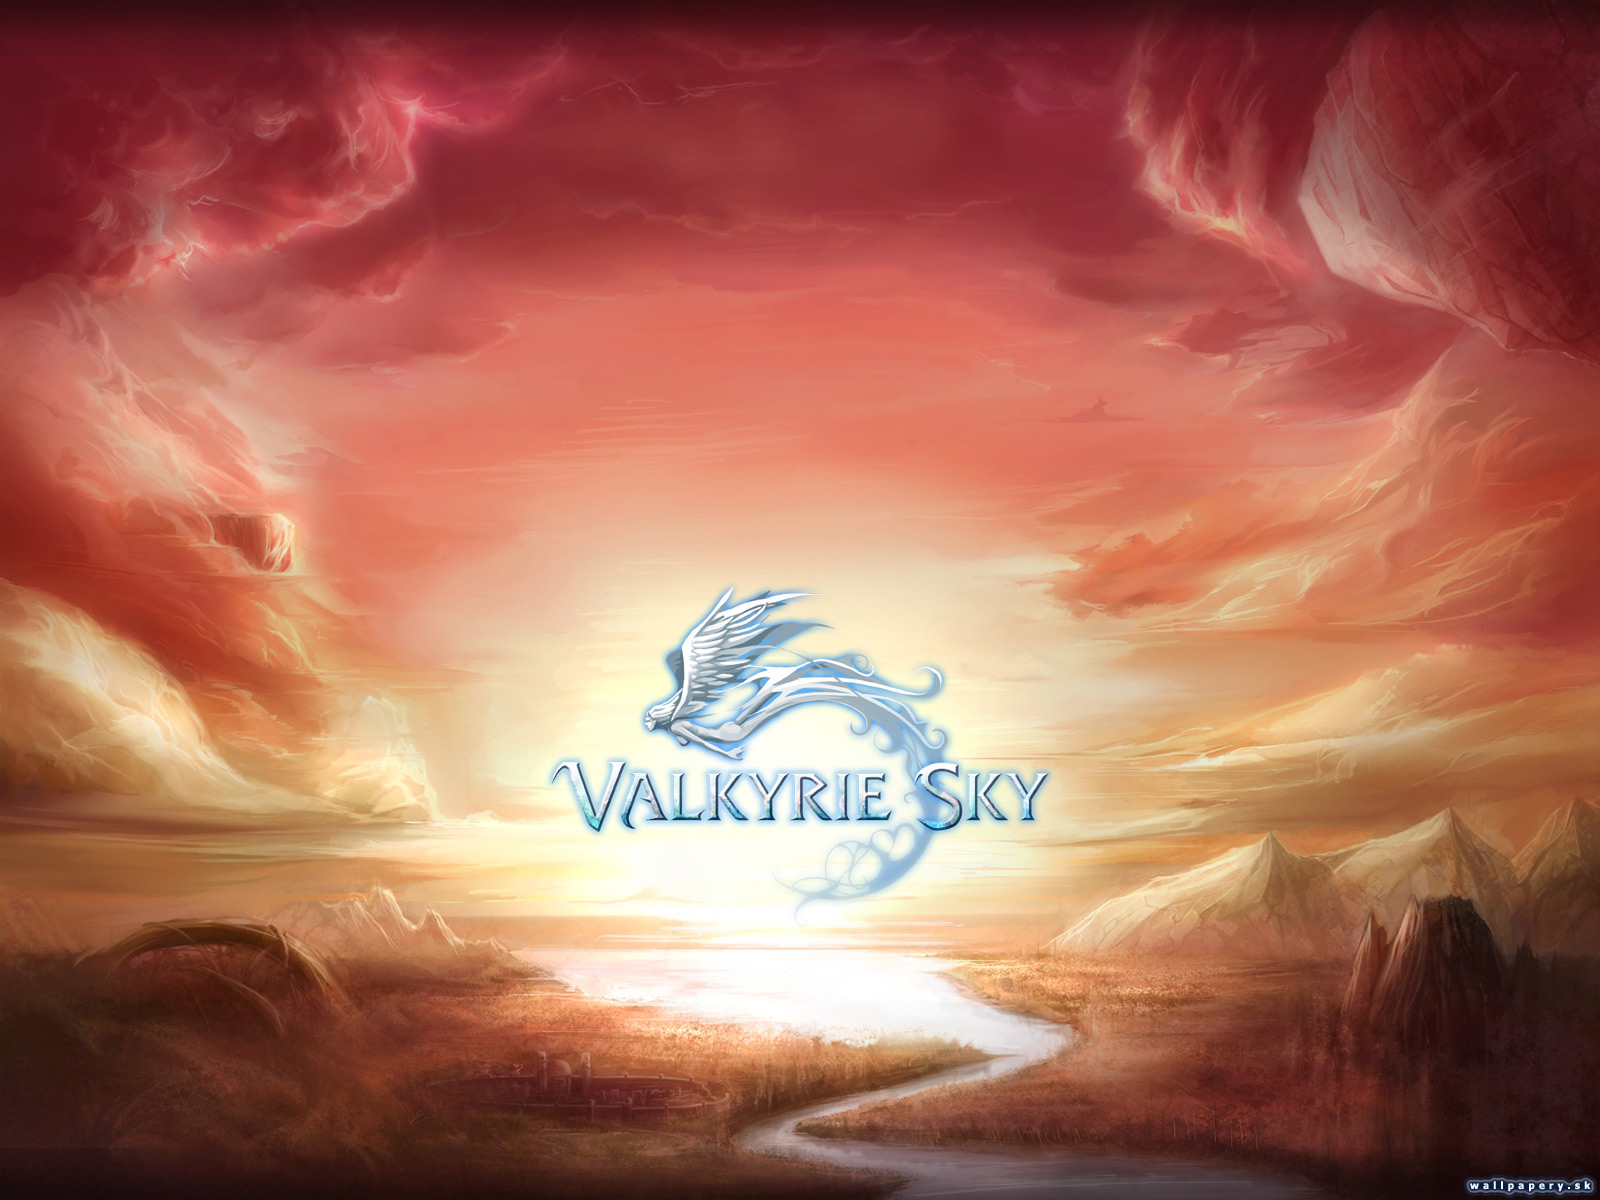 Valkyrie Sky - wallpaper 11